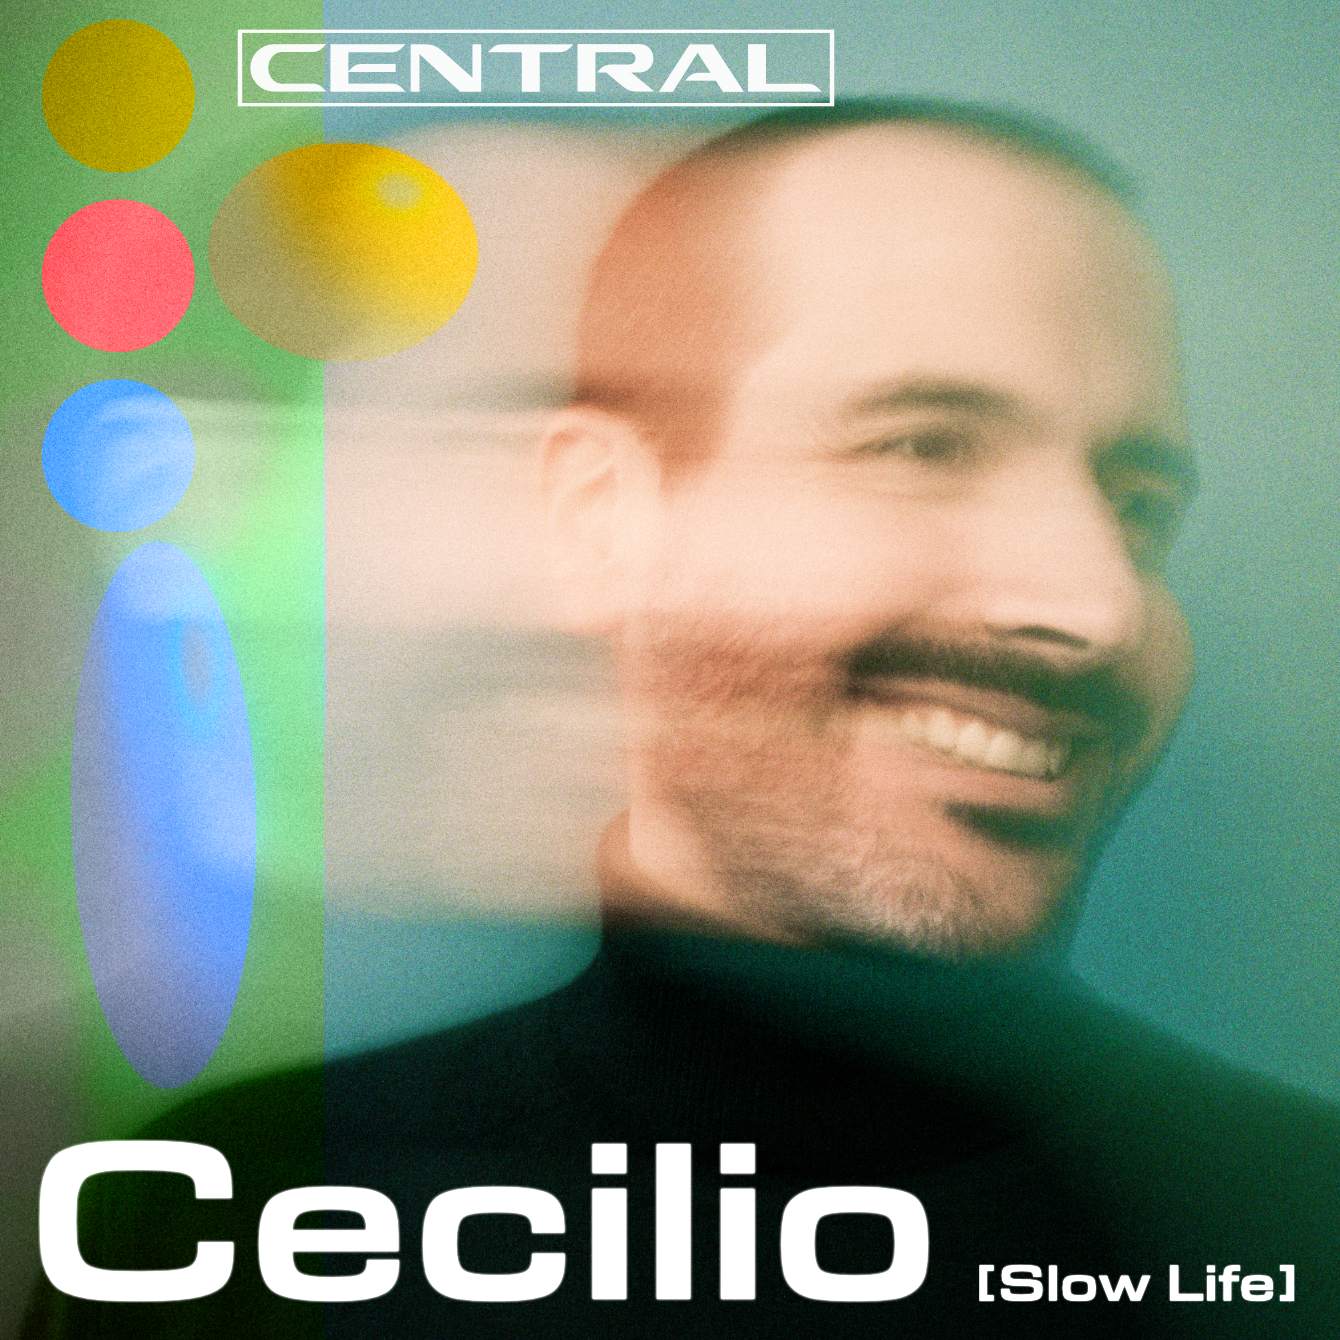 Central - Cecilio [Slow Life] - フライヤー表